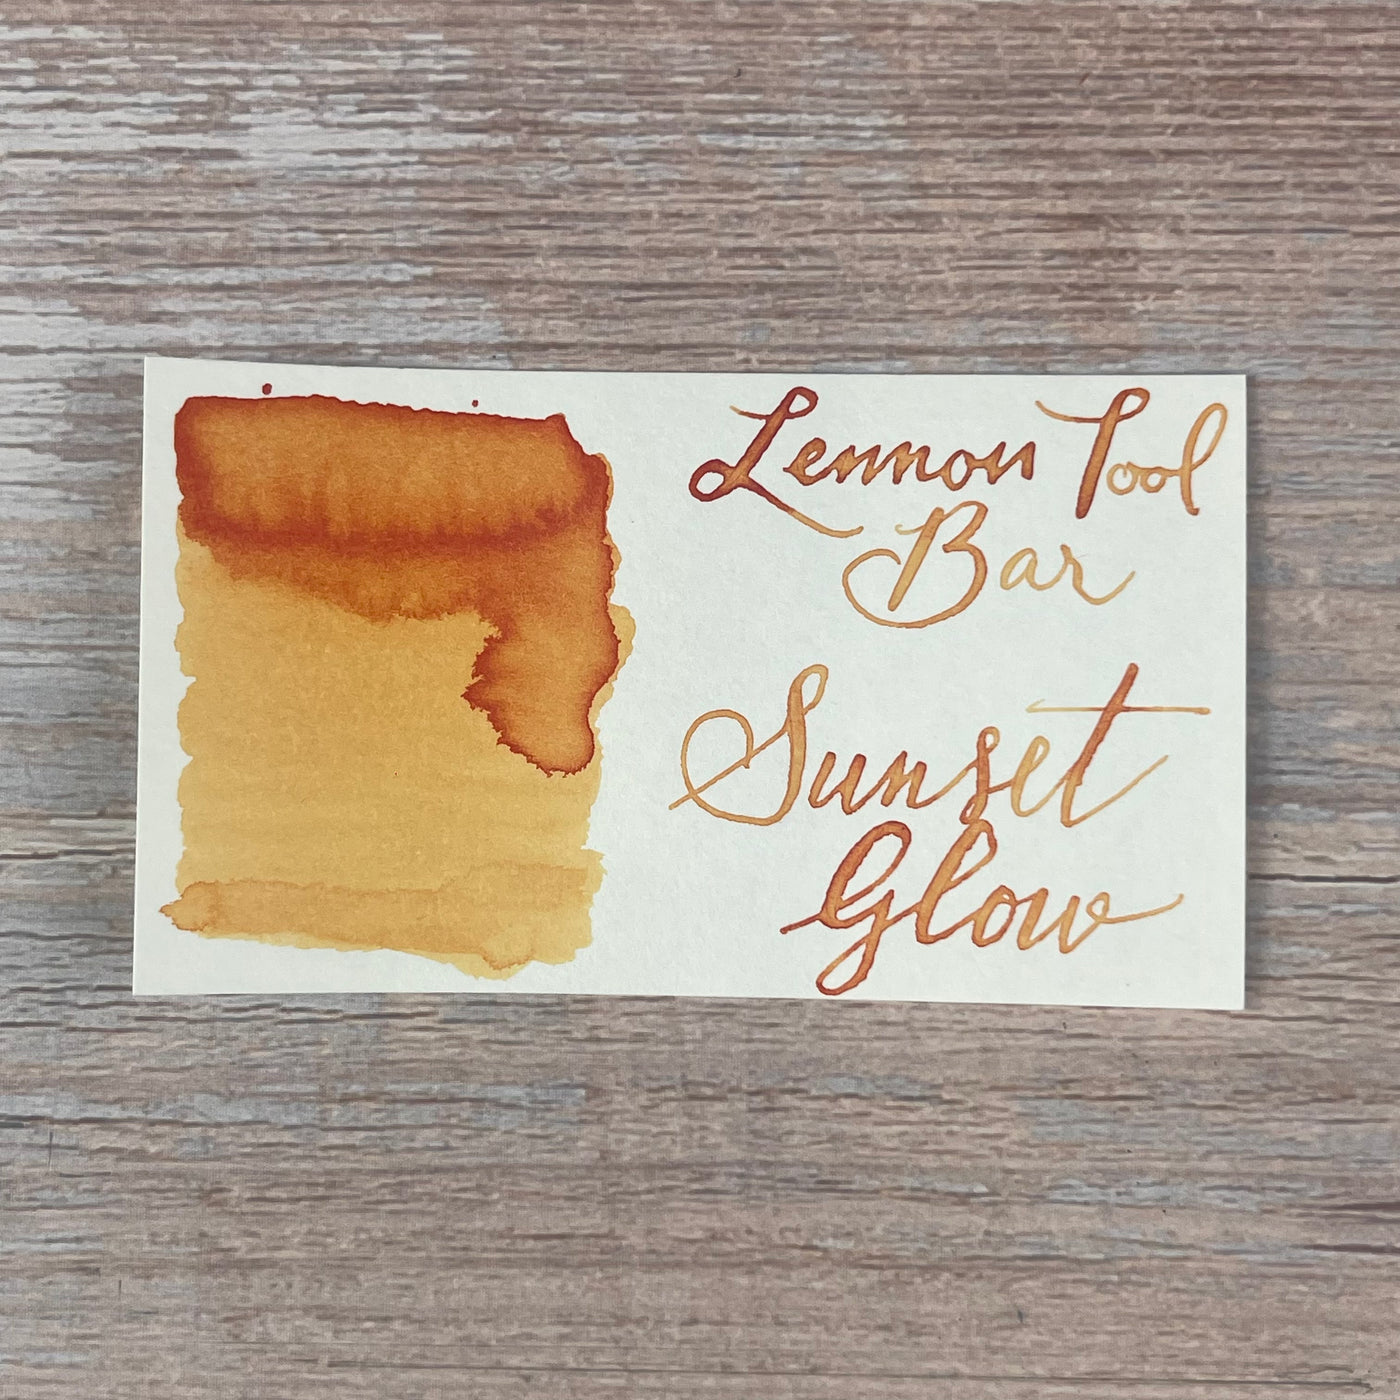 Lennon Tool Bar Sunset Glow - 30ml Bottled Ink